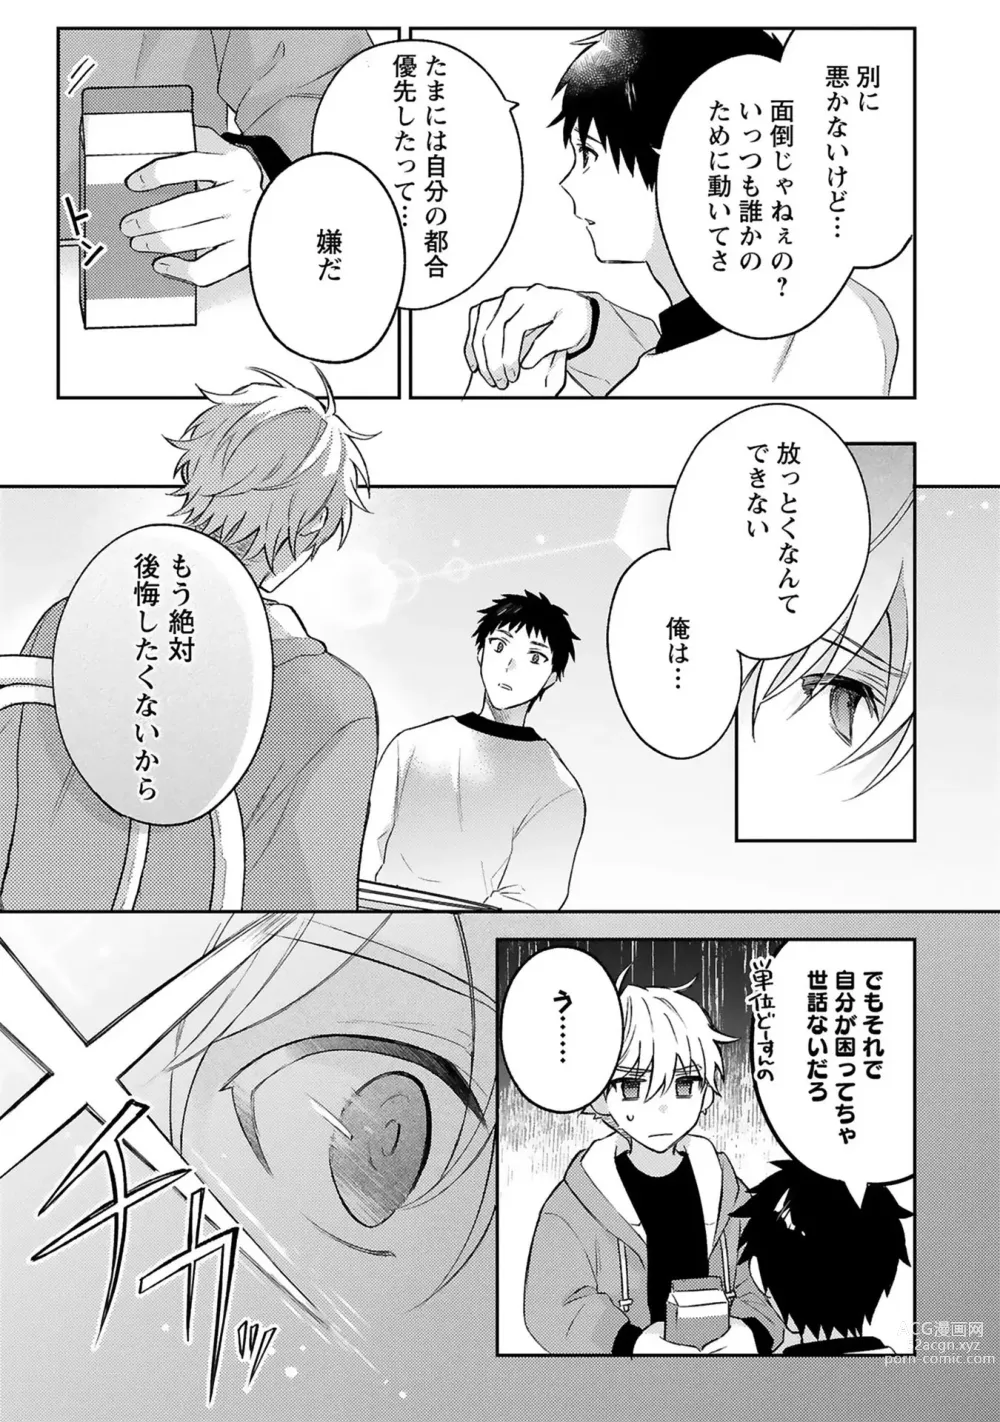 Page 9 of manga Sagashi Mono wa Kimi desu ka